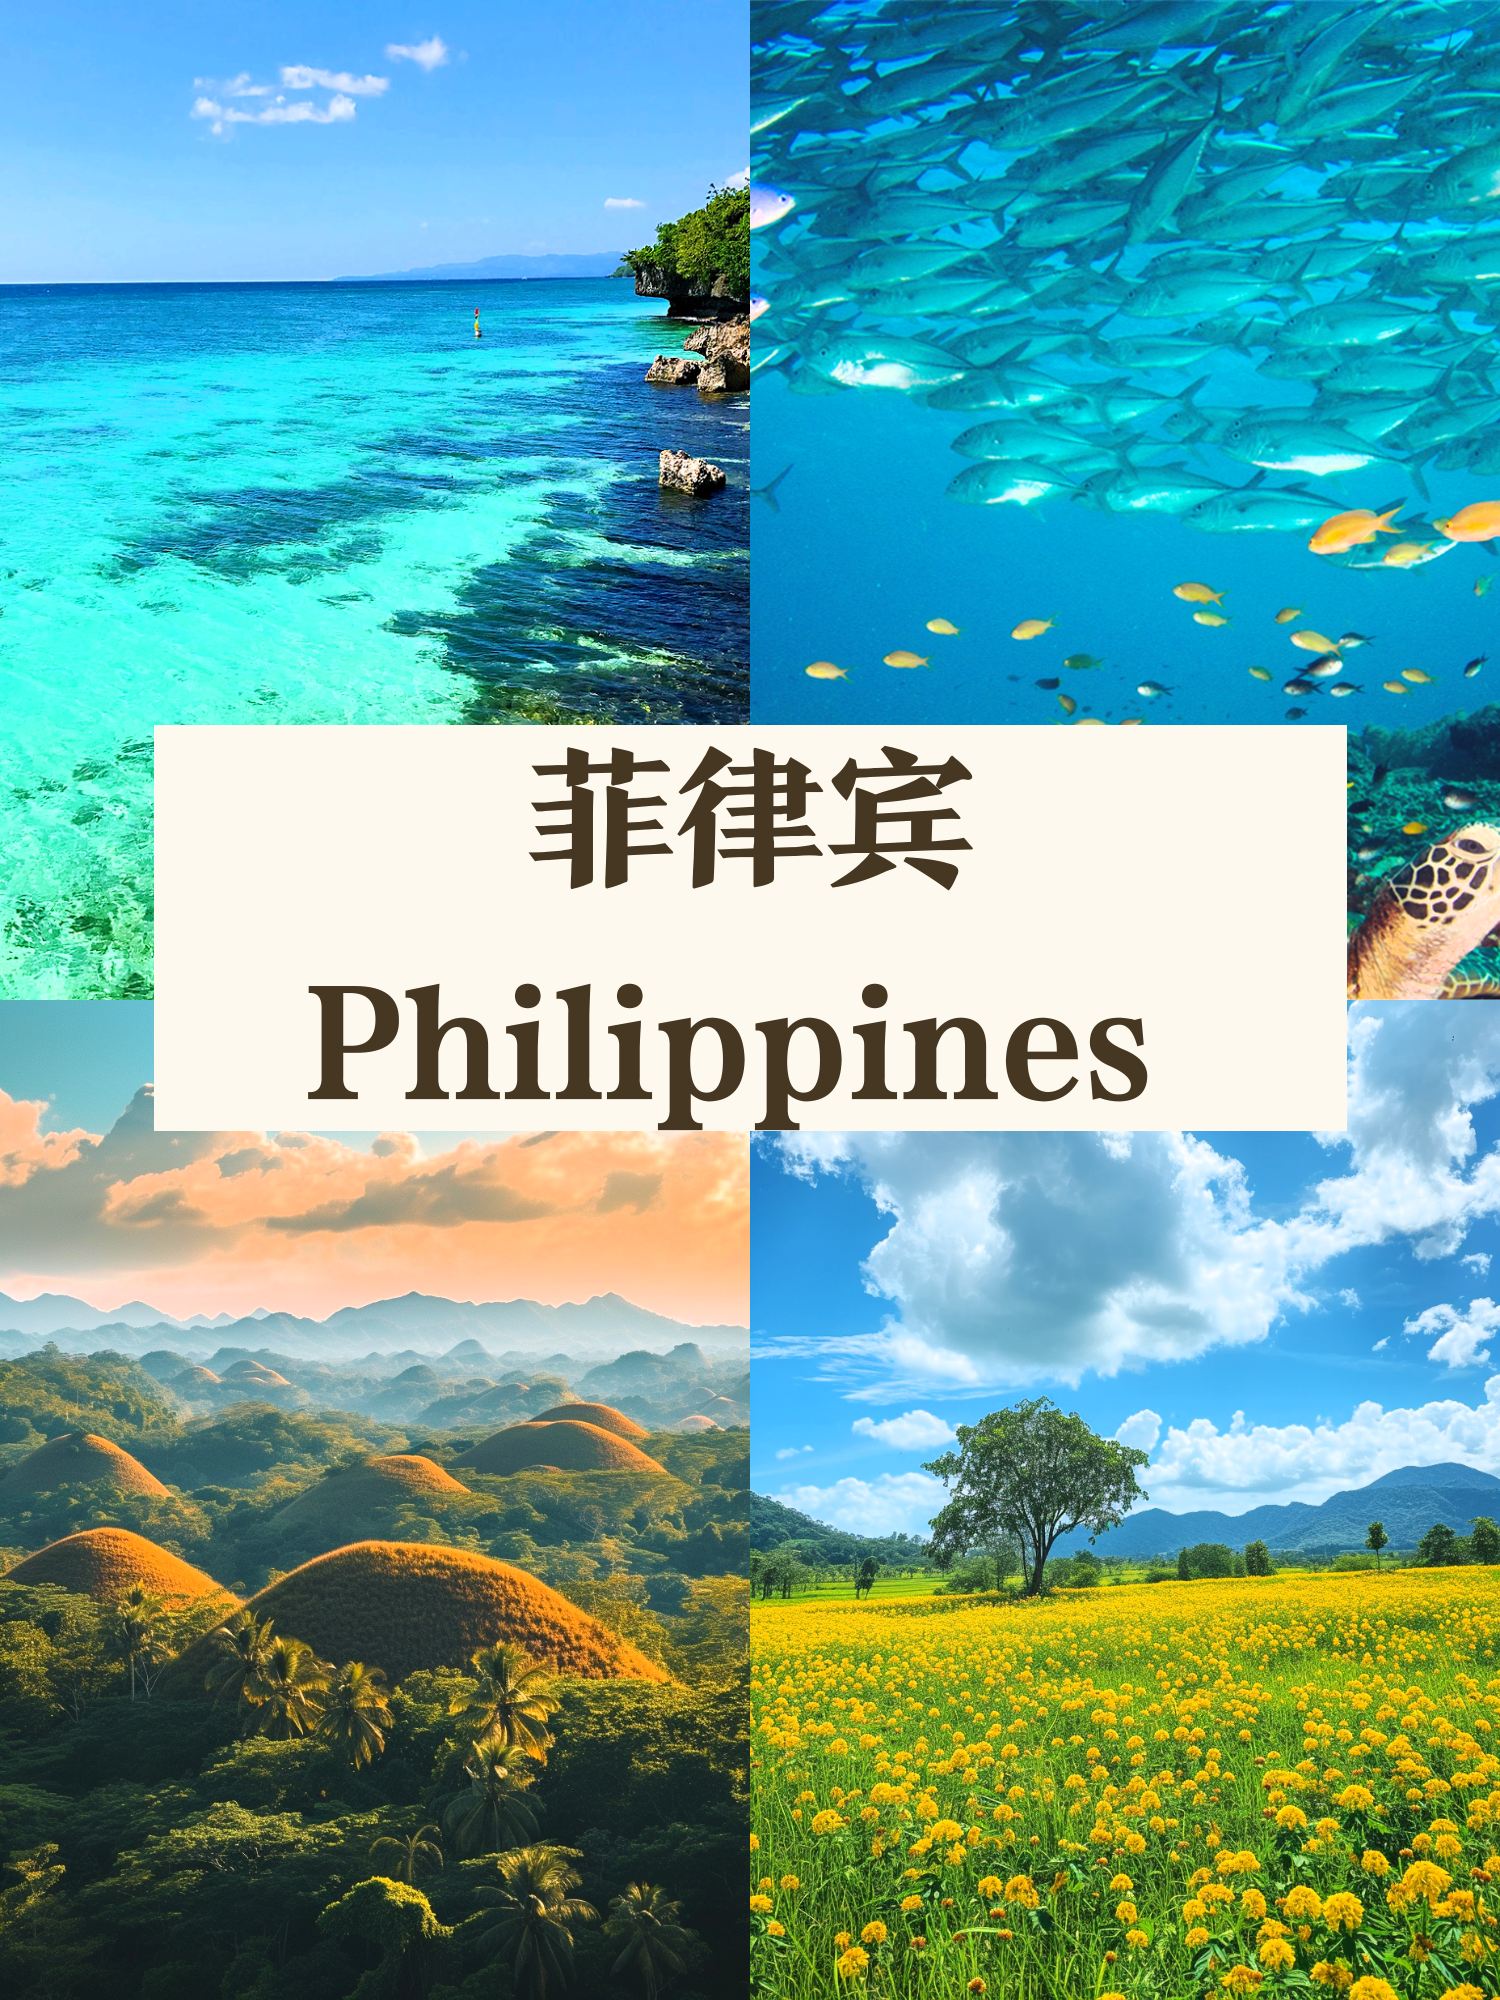 菲律宾游|美到哭 必去的5个地方😭